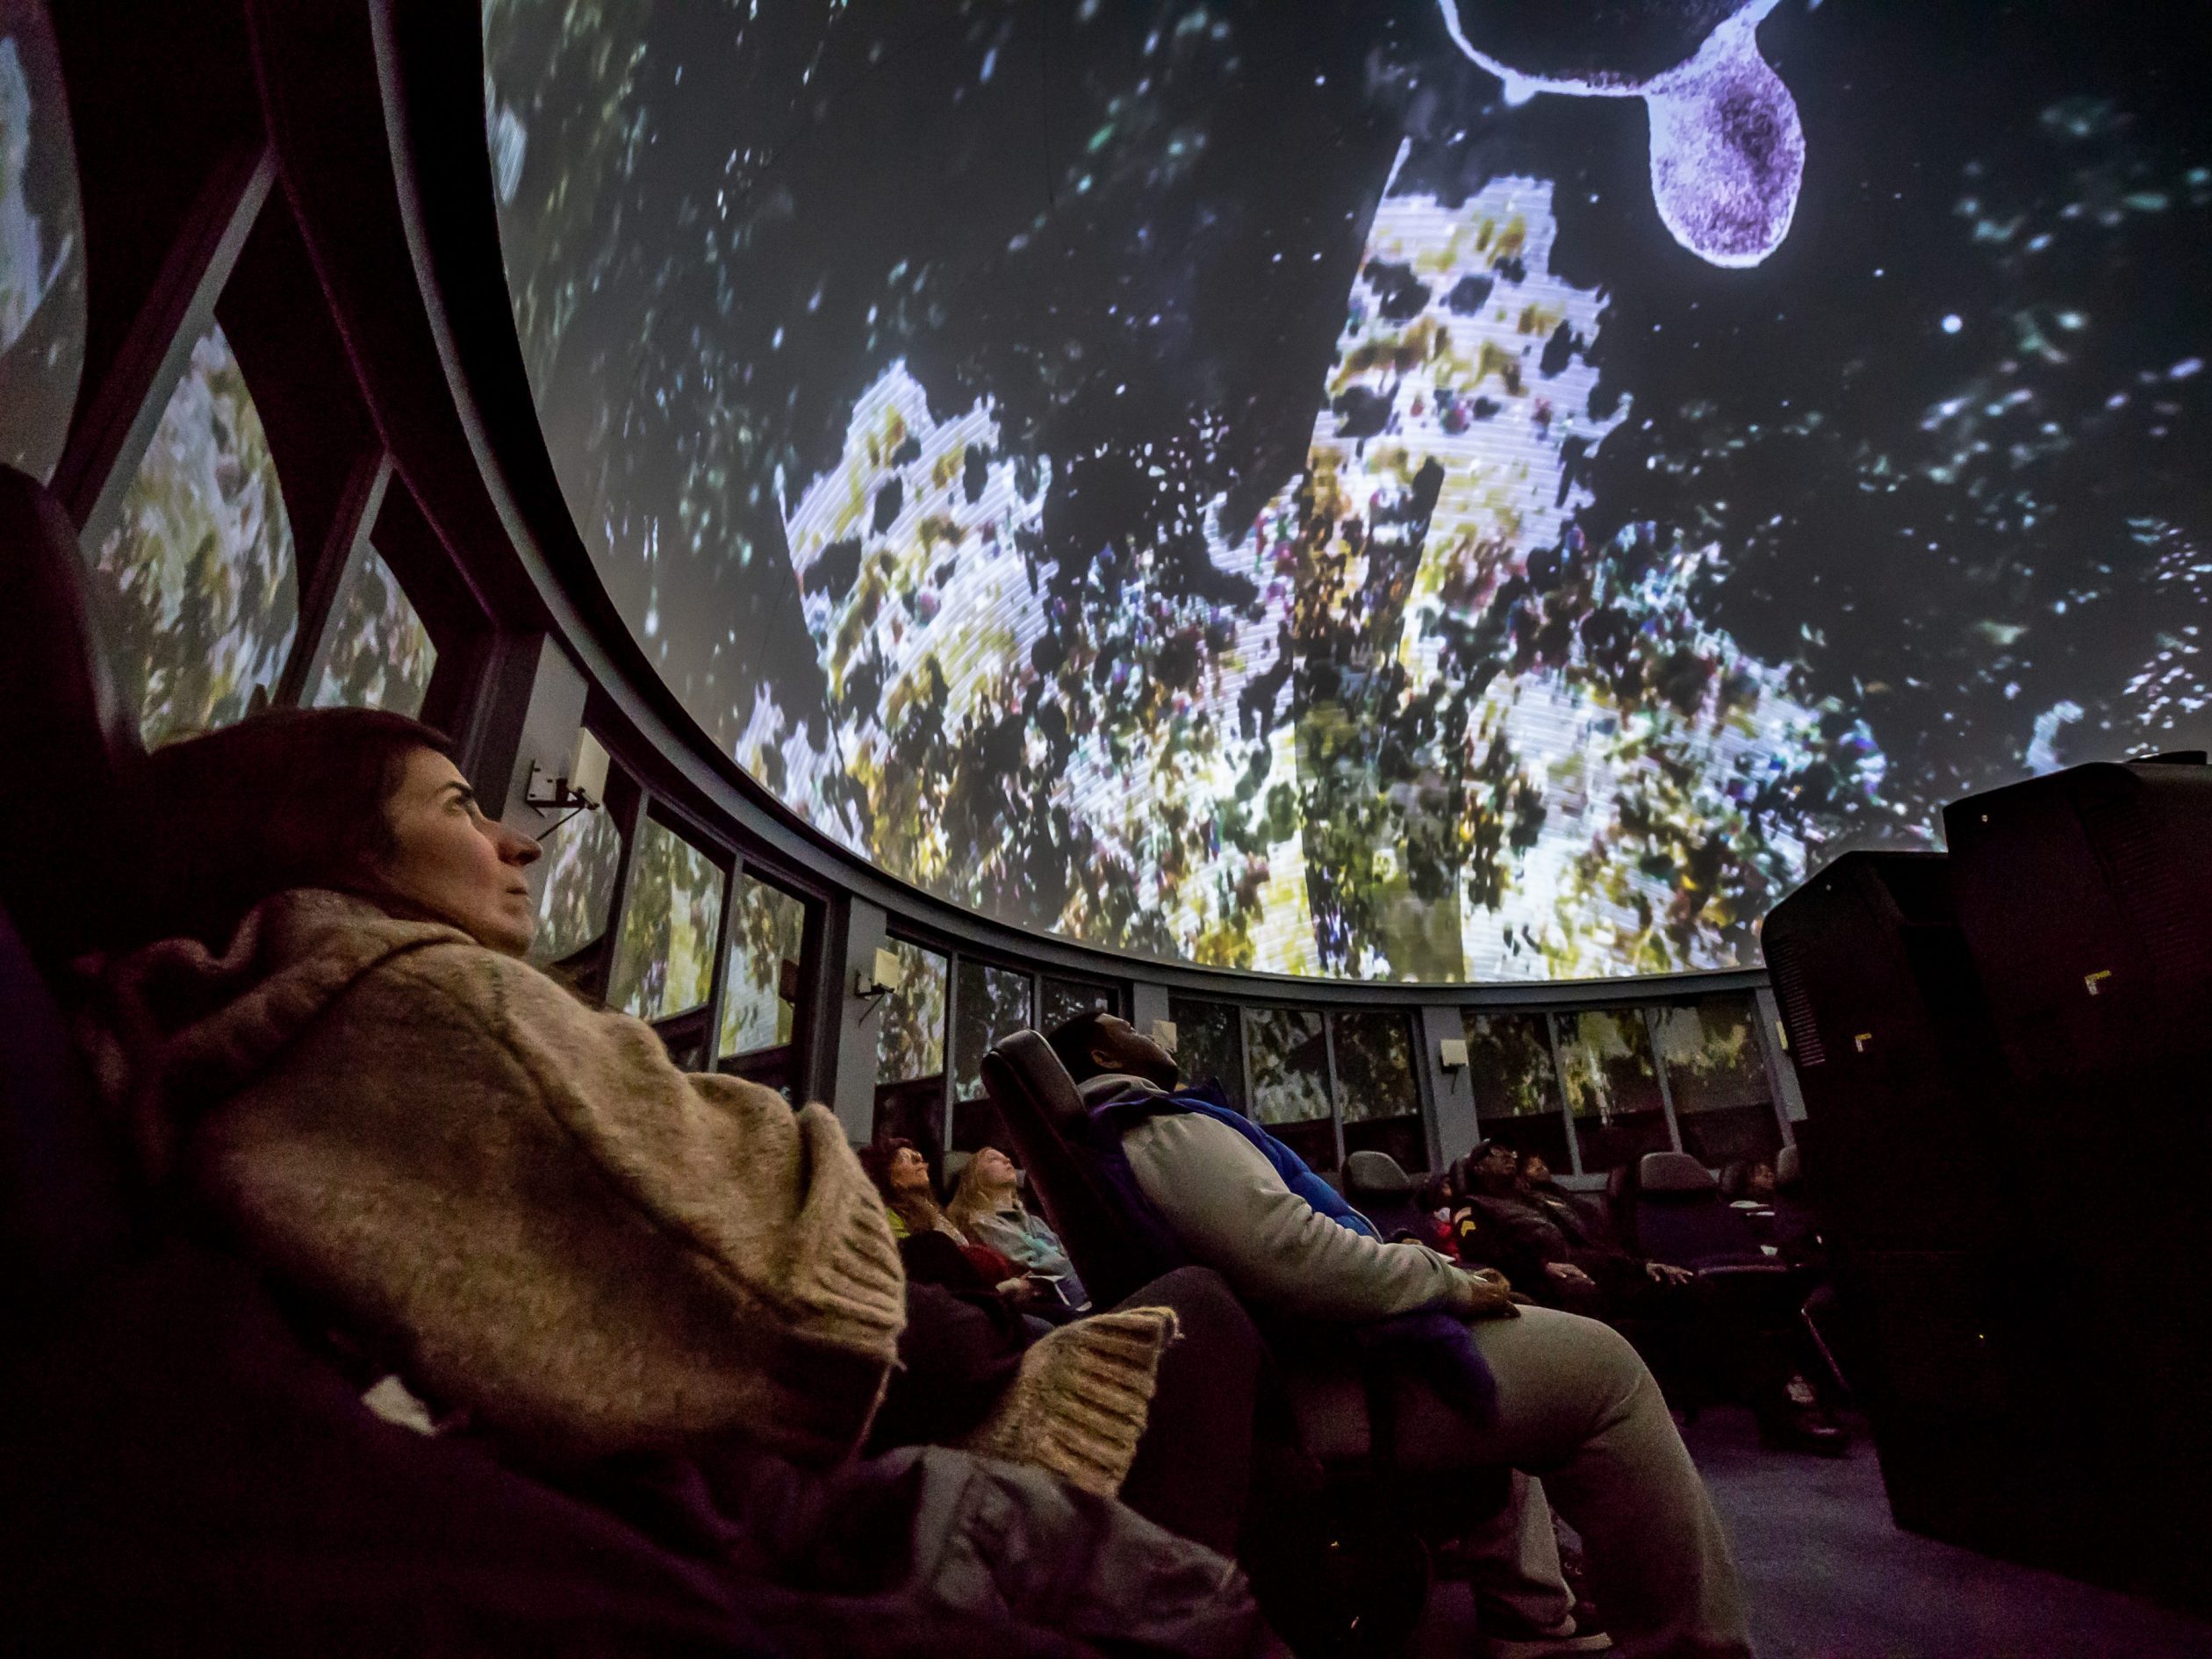 Planetarium / Planetarium